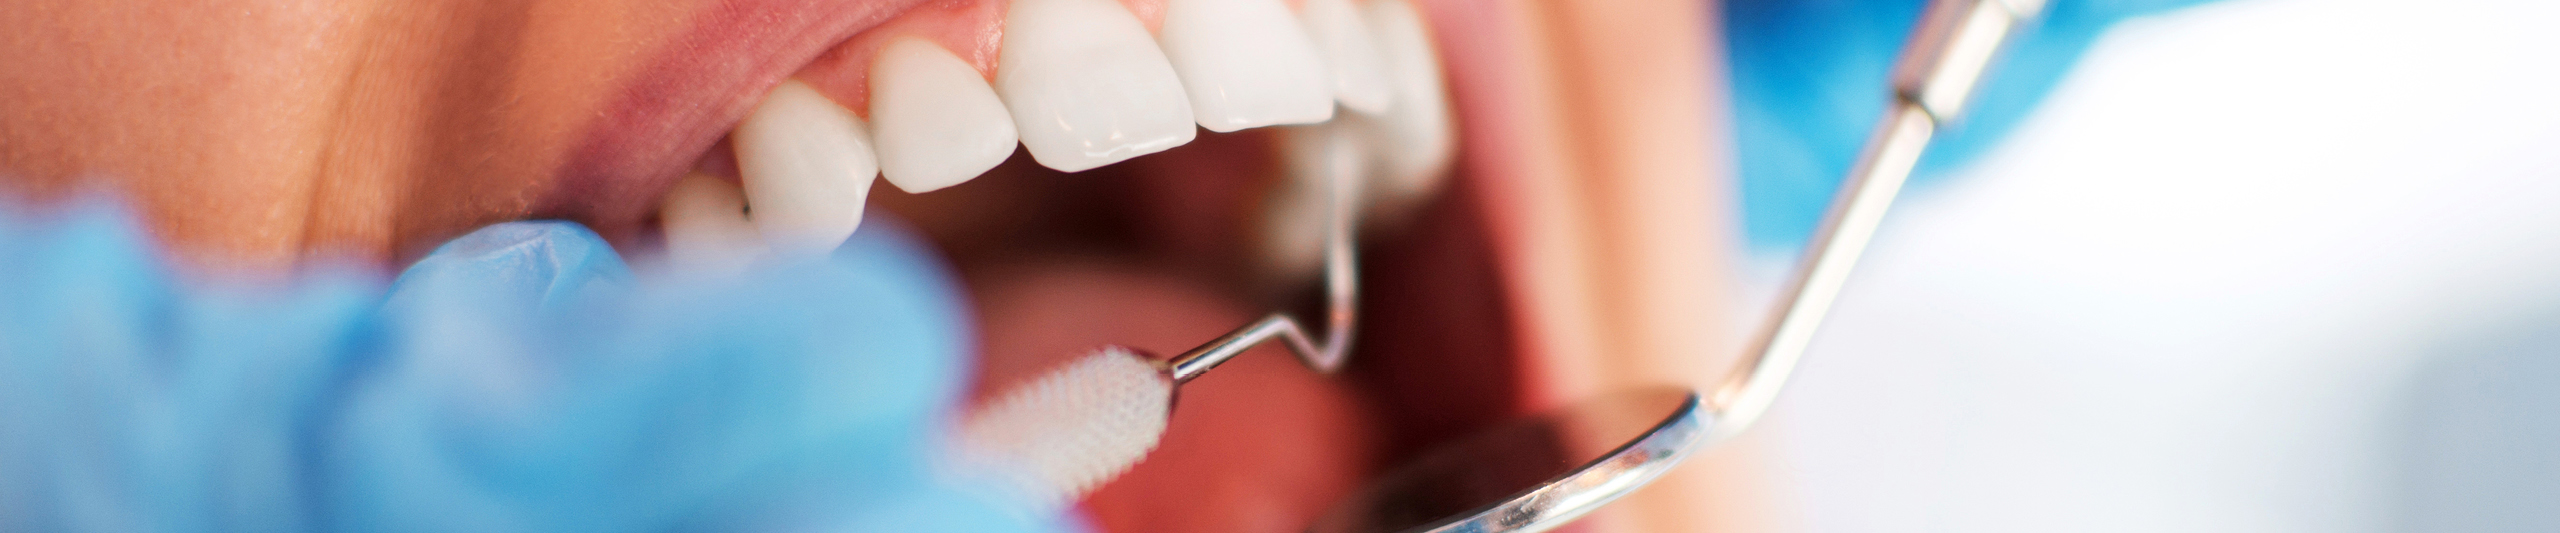 Tænder der er ved at blive undersøgt med tandlægeudstyr